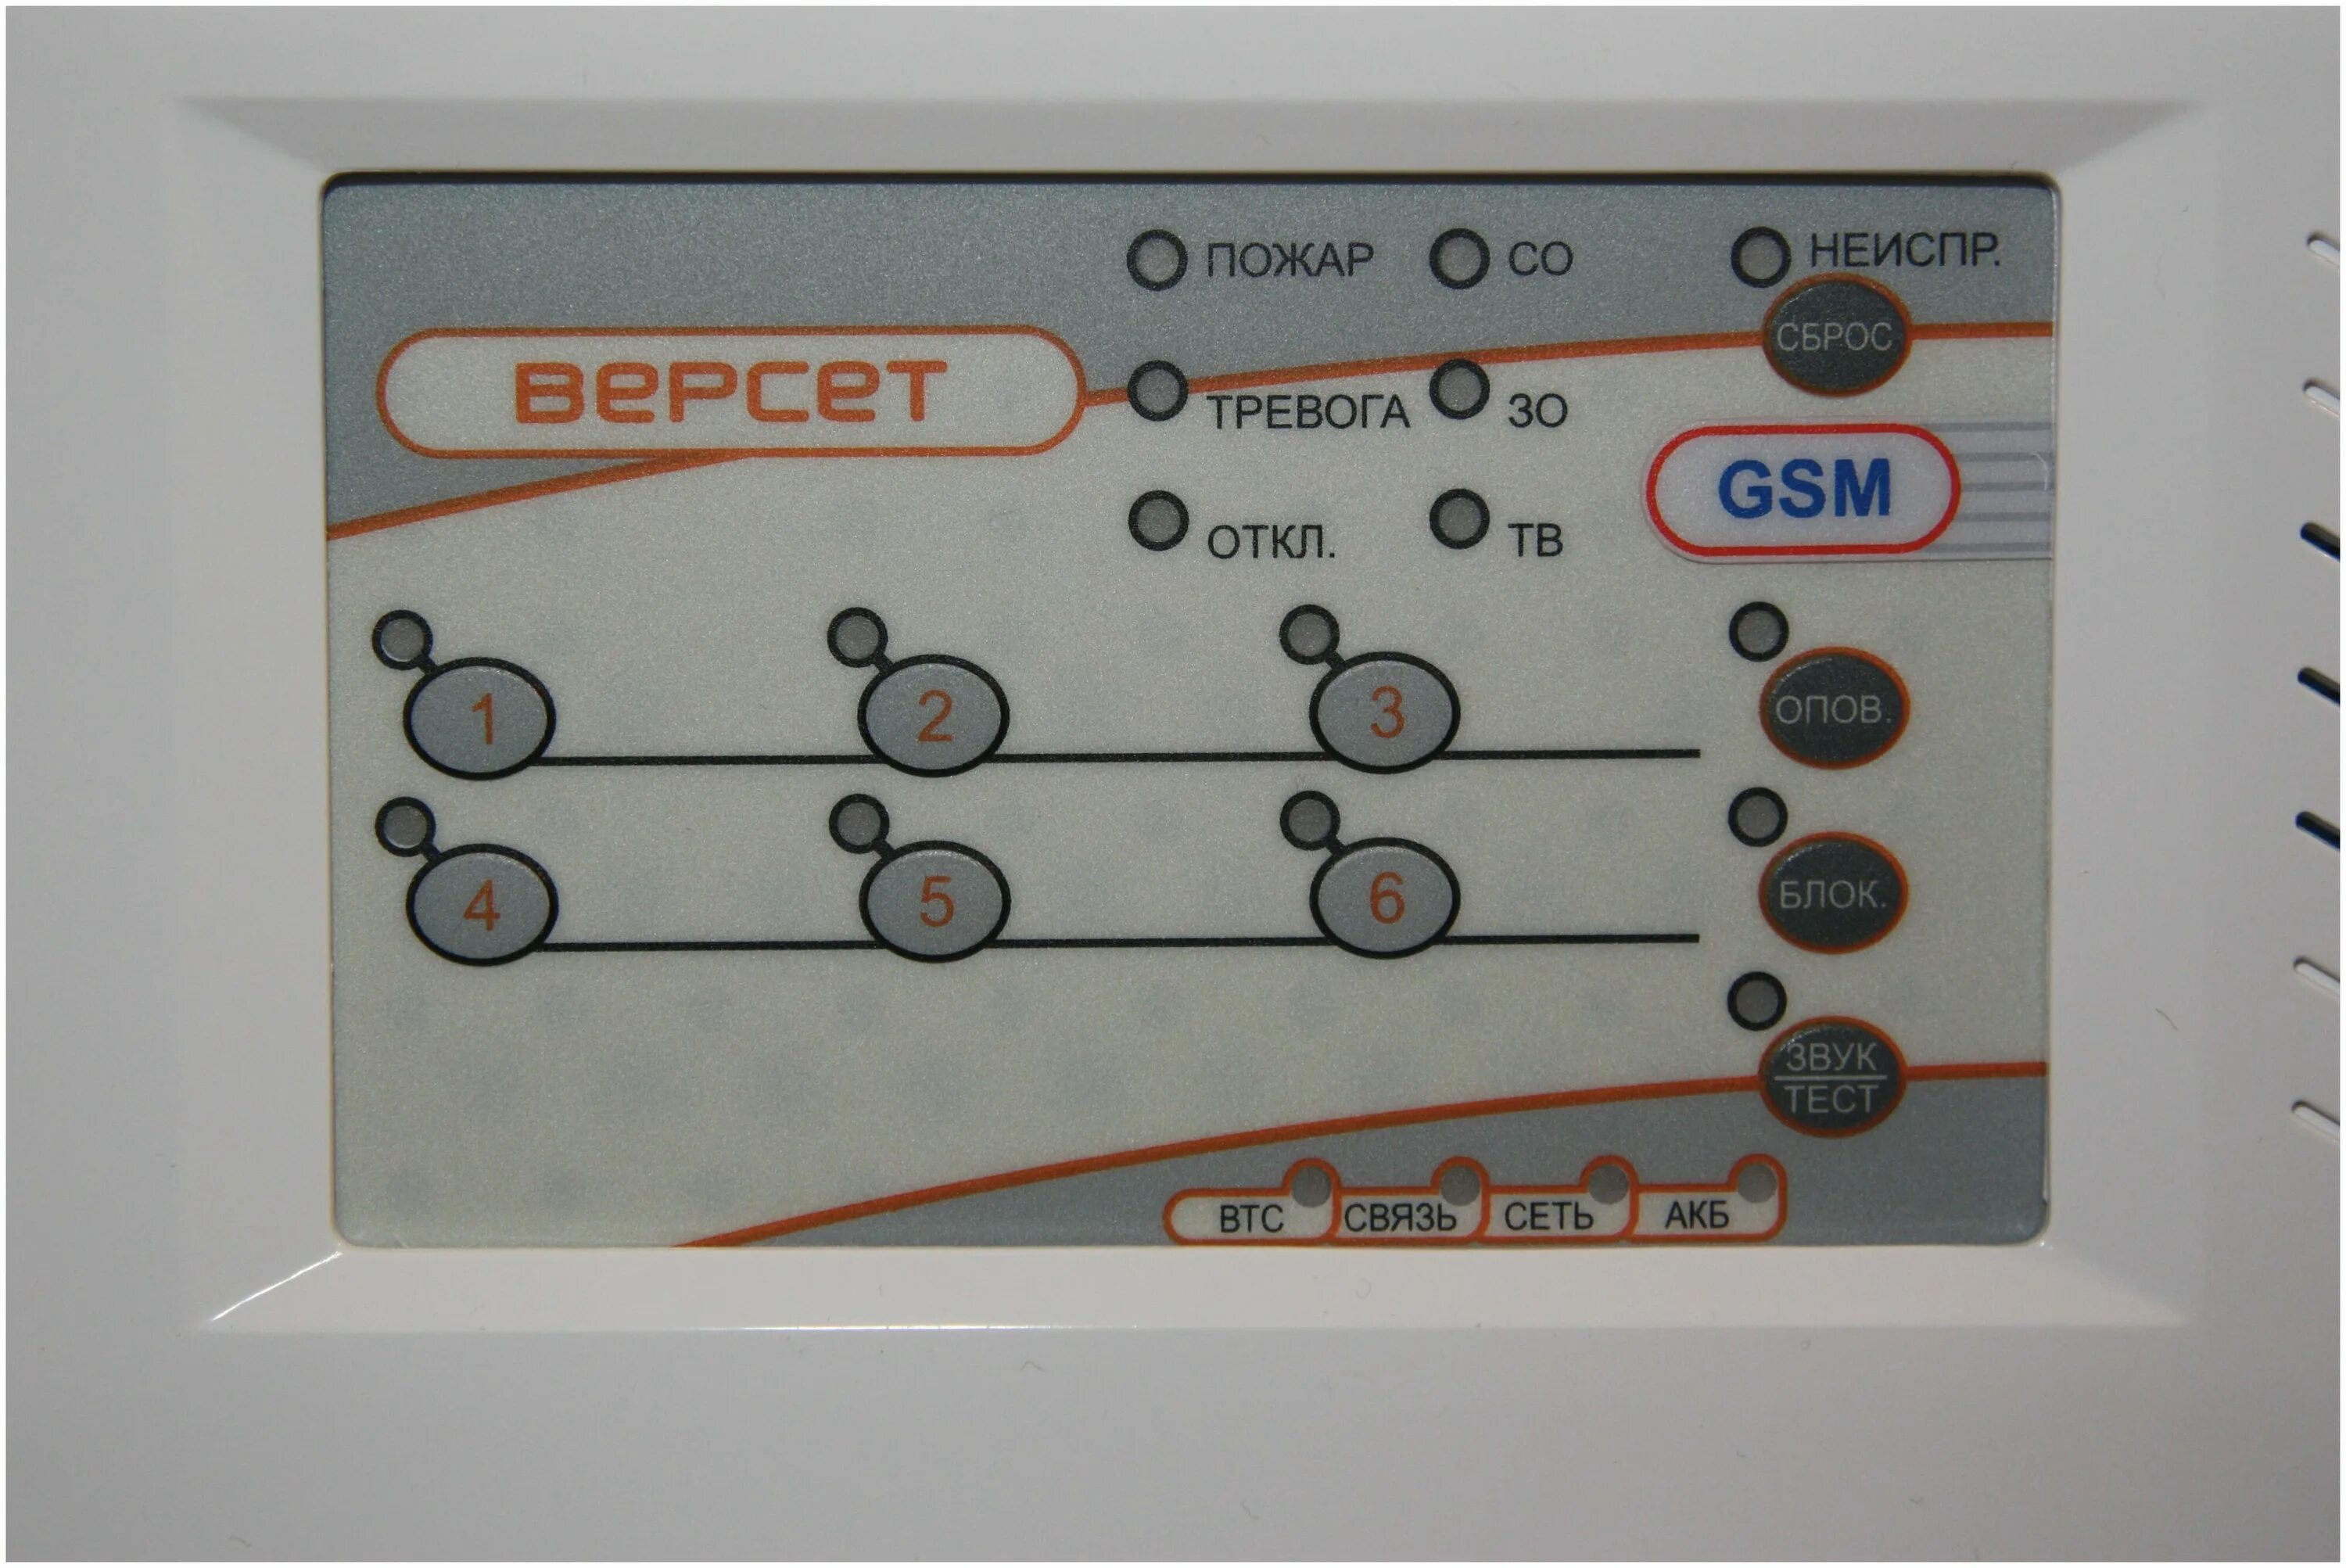 Версет gsm. Версет-GSM 06 ВМ. Версет 03 прибор приемно-контрольный охранно-пожарный. Прибор приемно-контрольный охранно-пожарный Версет-GSM 02. Версет-GSM 09 ВМ.